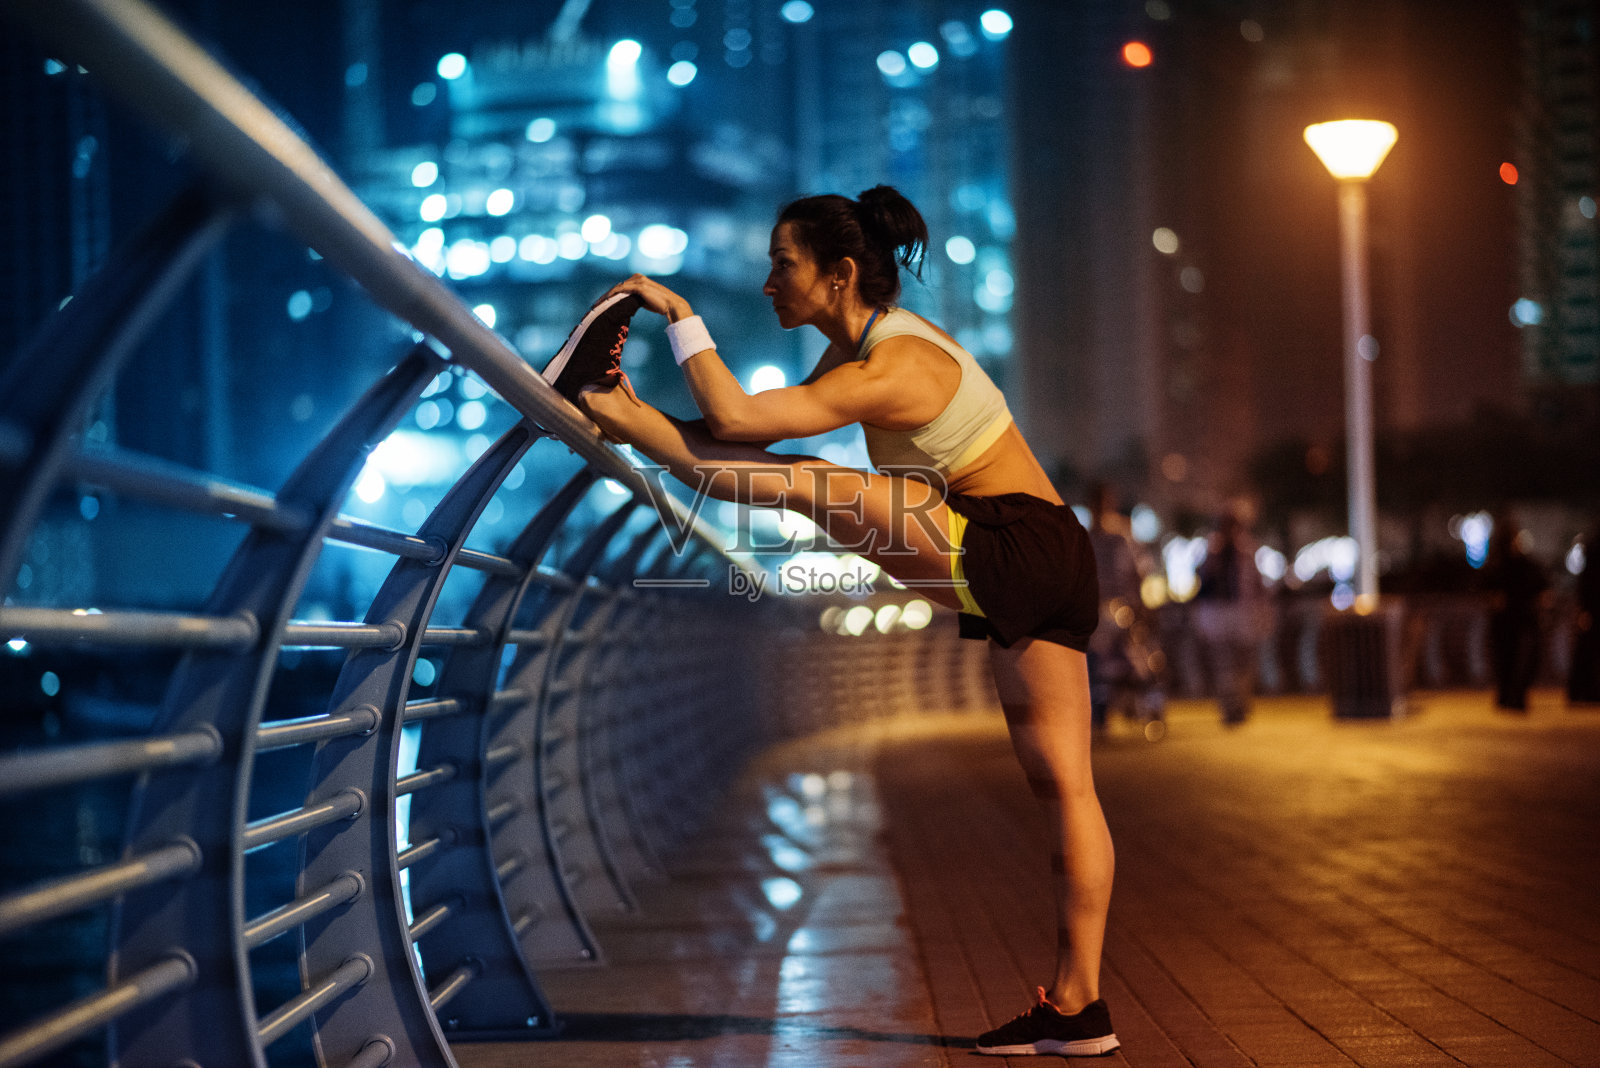 女性跑步者伸展腿照片摄影图片